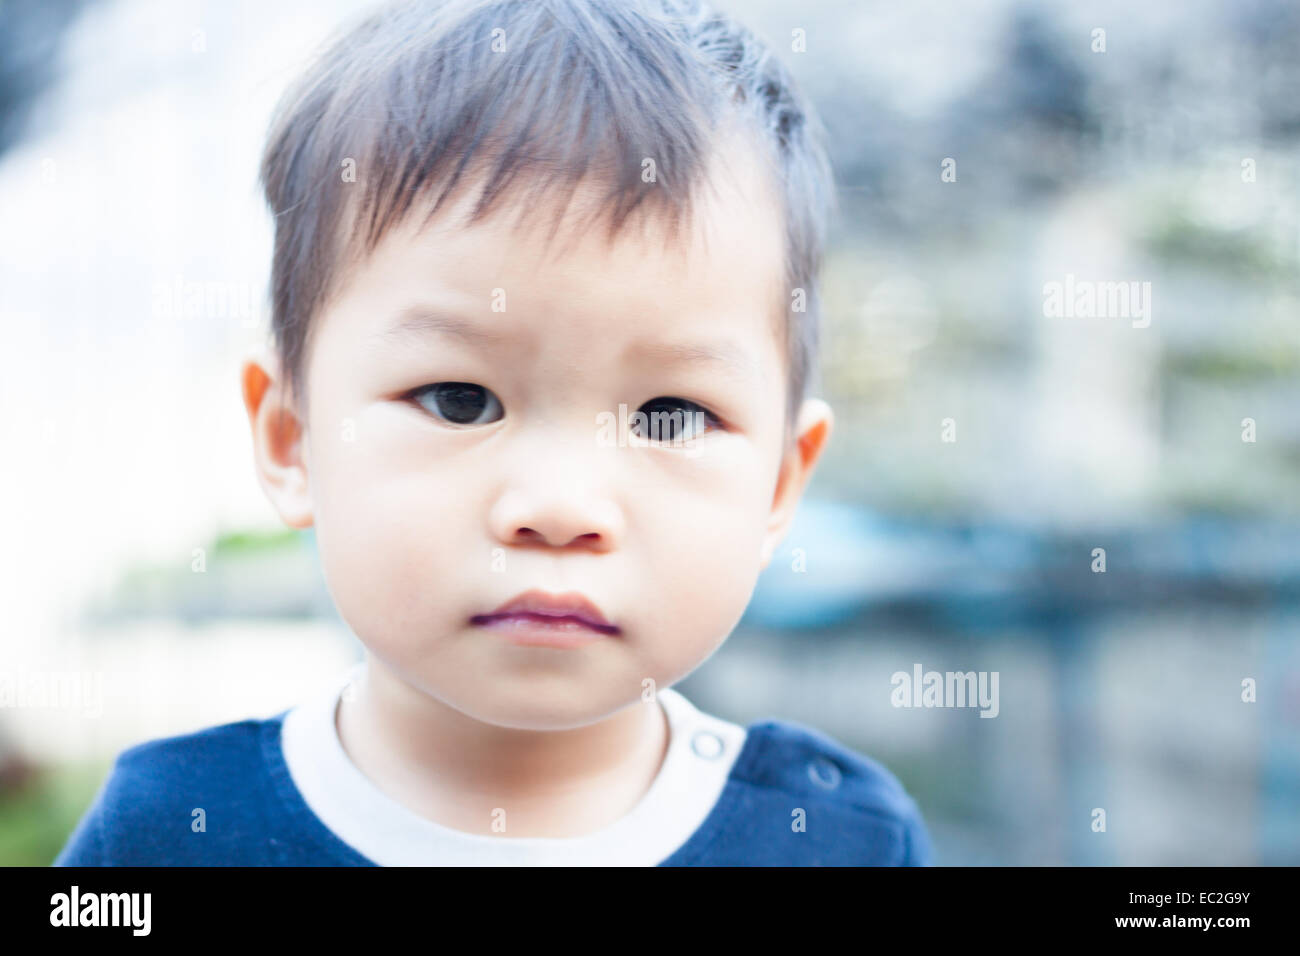 Little Boy asiatici guardare fotocamera , stock photo Foto Stock